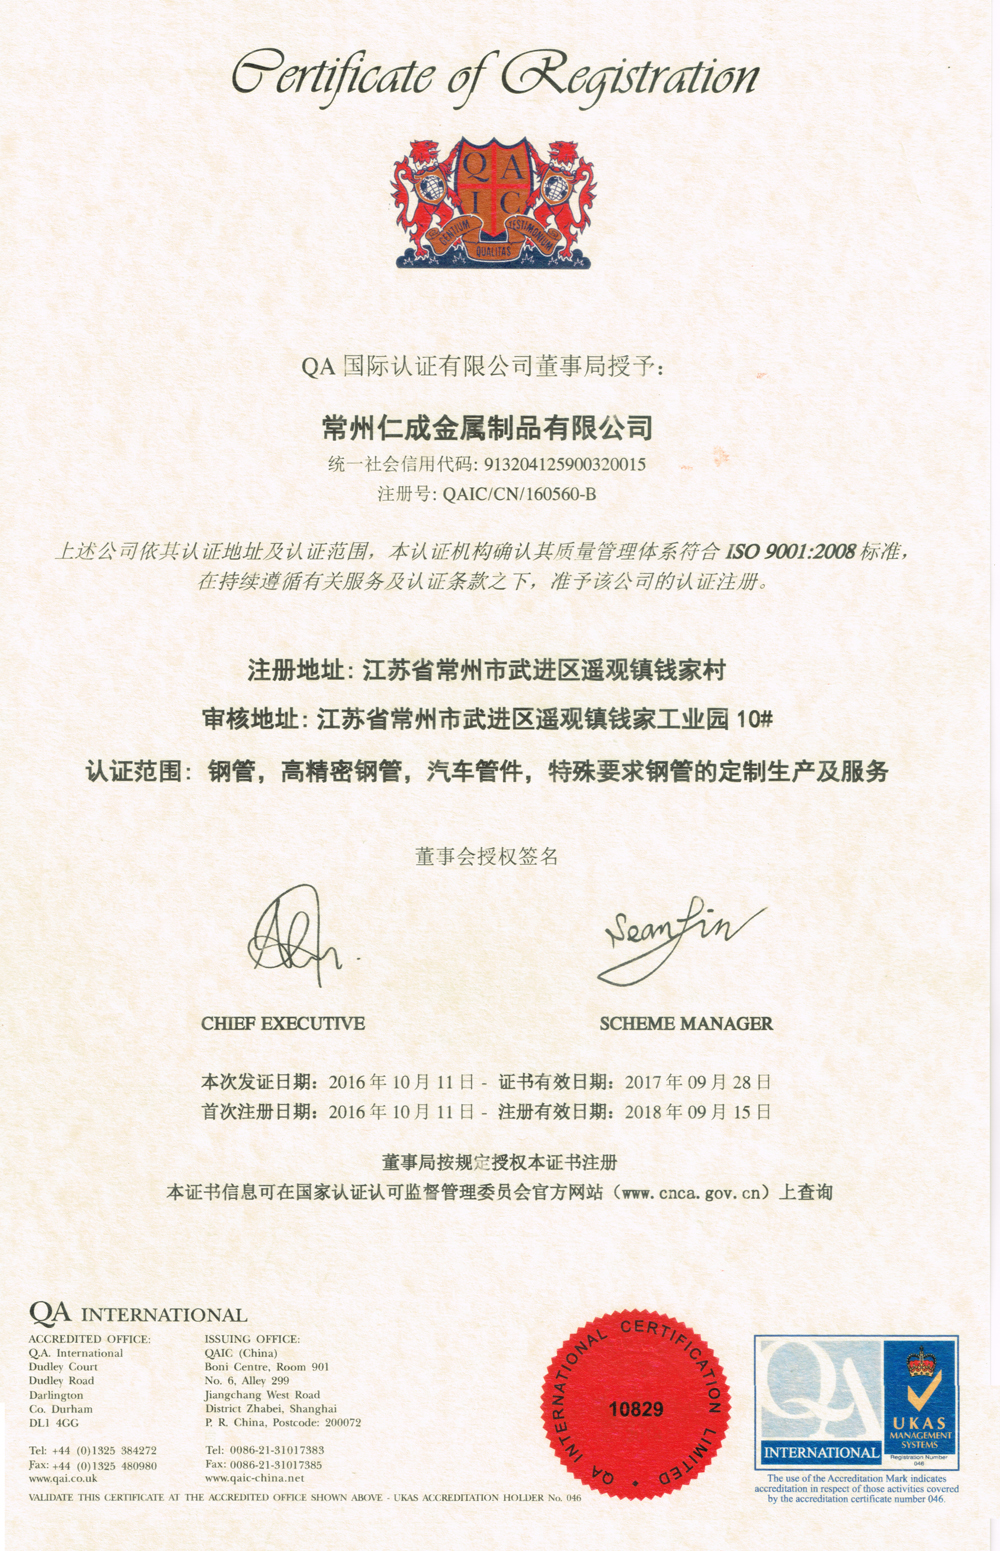 仁成金属制品通过ISO9001:2008认证